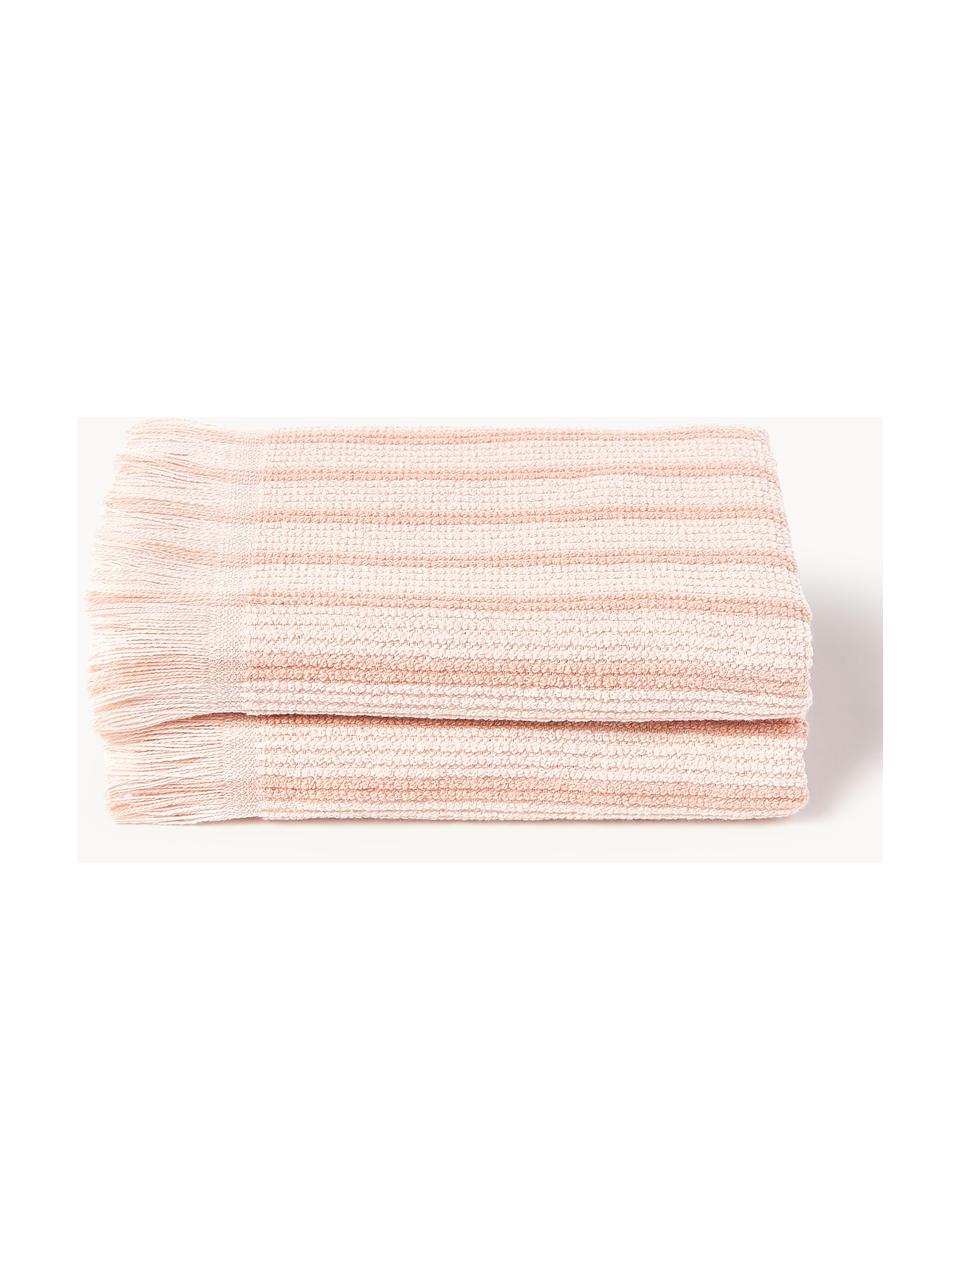 Handdoek Irma in verschillende formaten, Lichtroze, Handdoek, B 50 x L 100 cm, 2 stuks